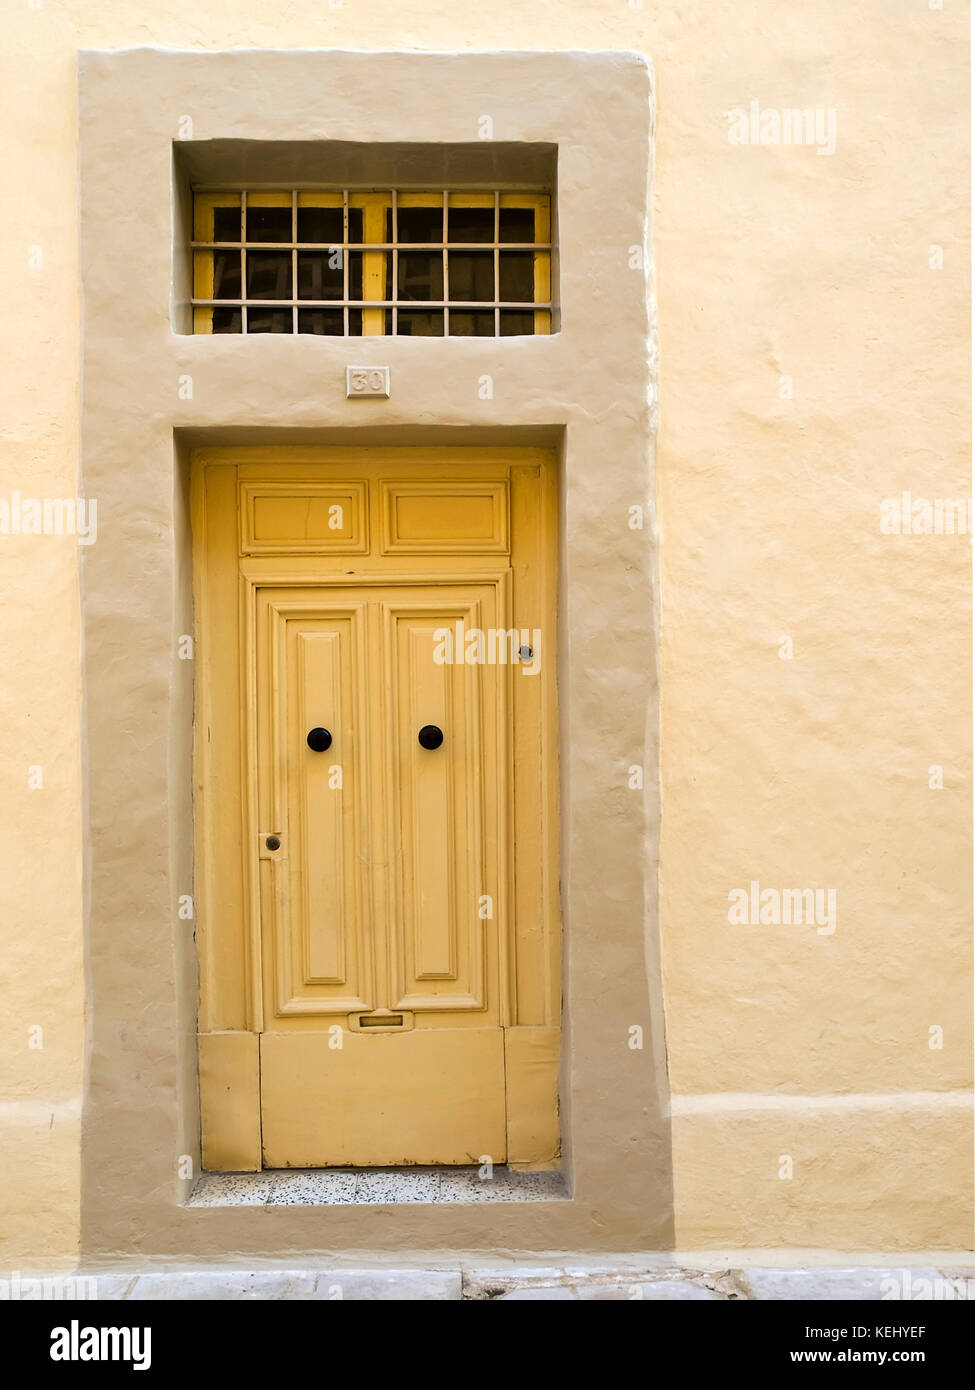 Eine seltsame Single Panel Tür in mdina in solch einer Weise hergestellt wie in Anlehnung an die traditionelle doppelte Fenster malta Tür Stockfoto